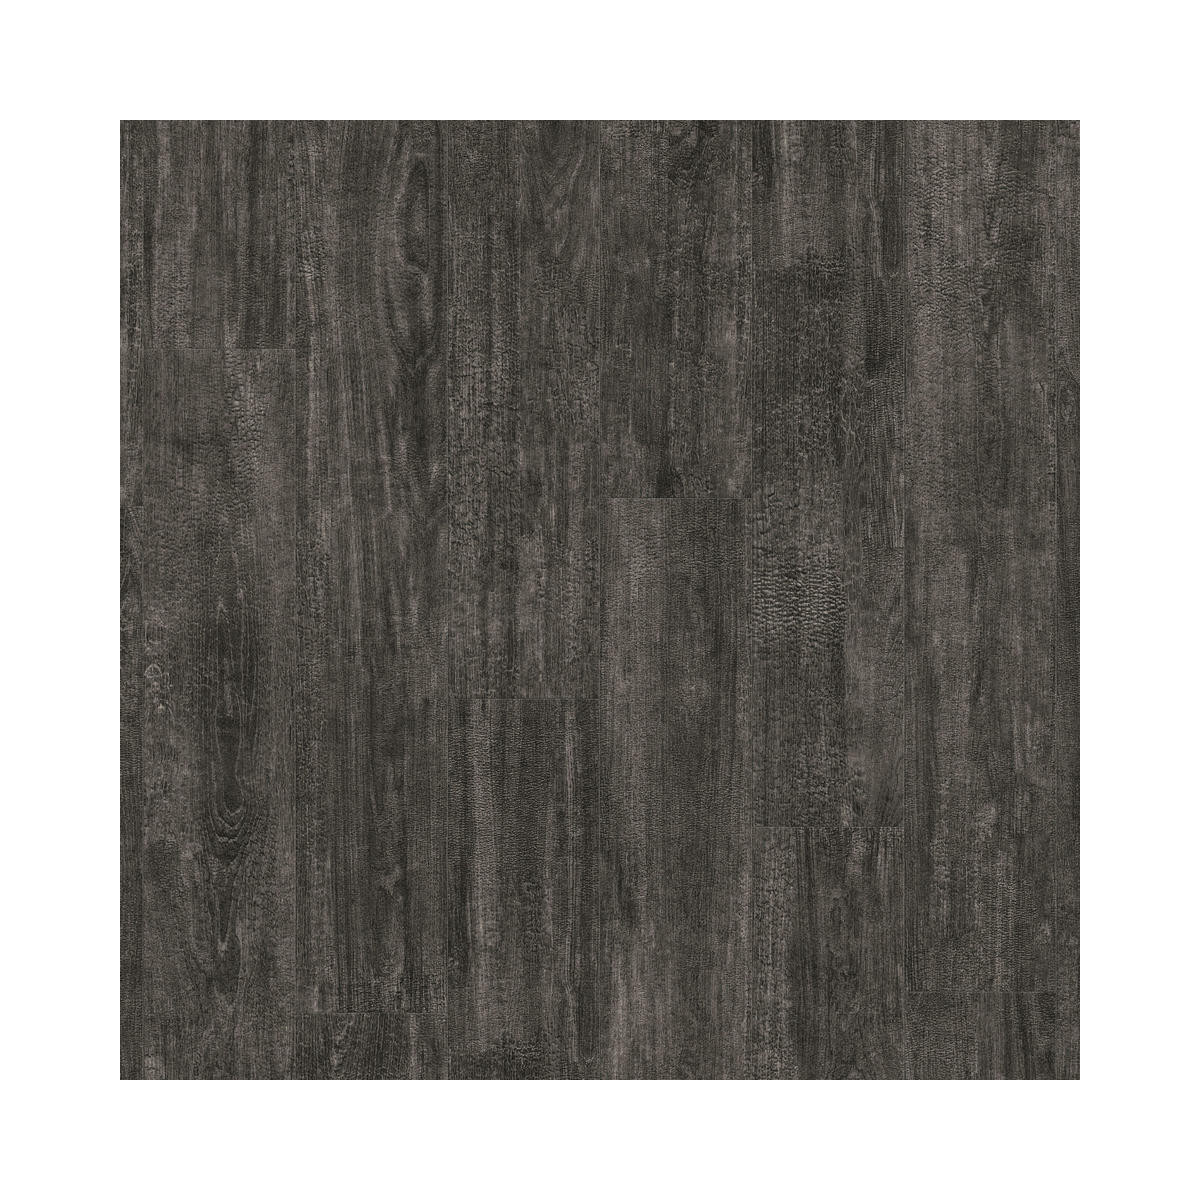 Vinylová podlaha lepená iD Inspiration 30 Charred Wood Black